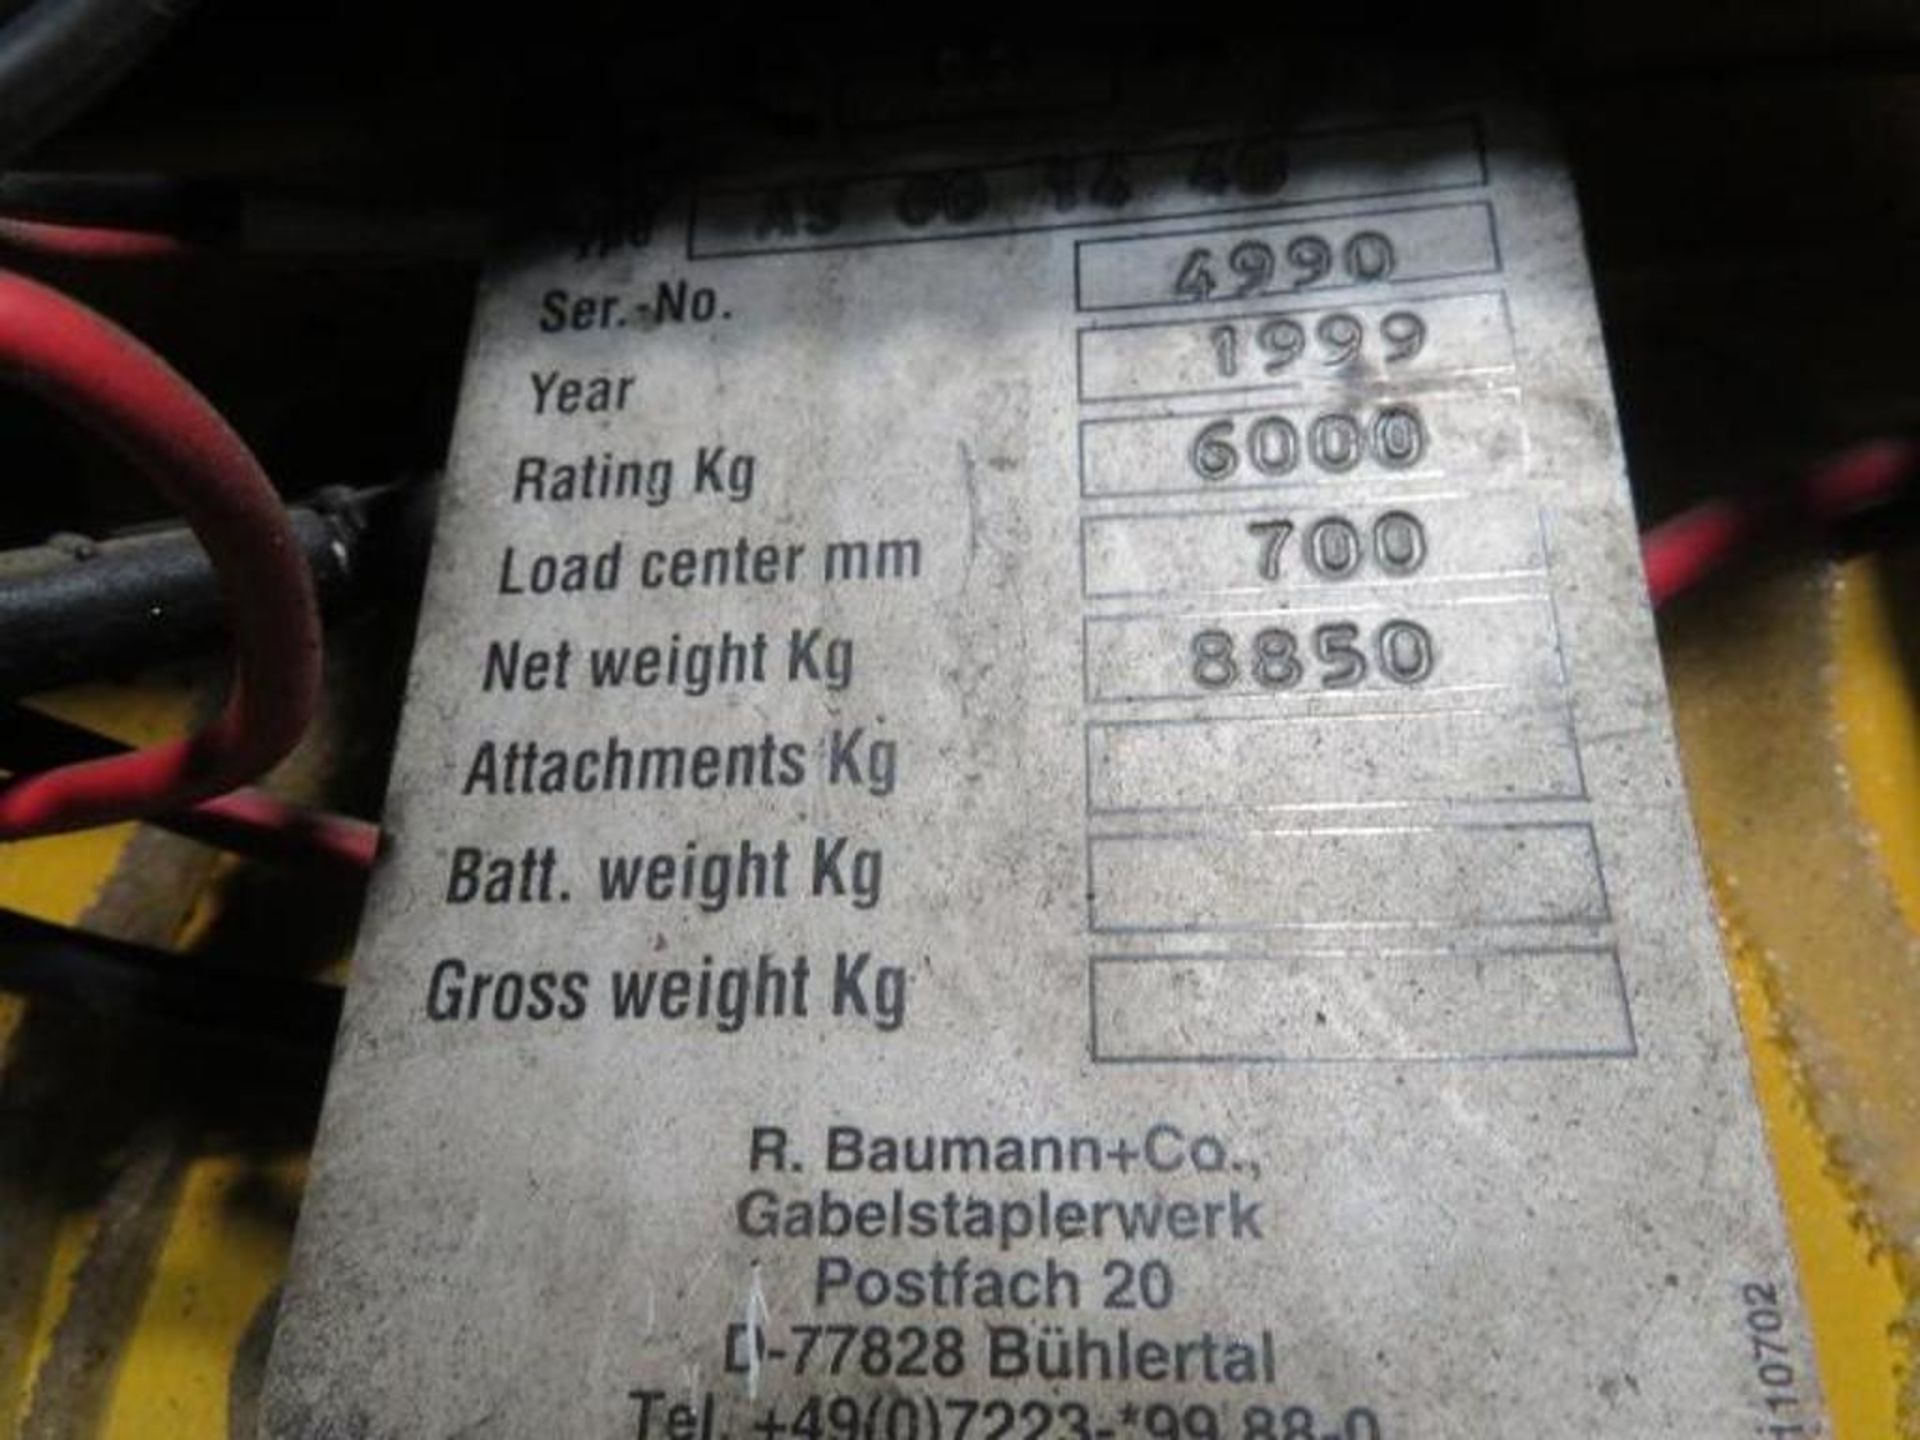 1999 Baumann 12,000 lb. Sideloader Model AS601440, S/N 4990, 4-Cylinder Perkins Diesel, 9X20 Tires - Image 7 of 7